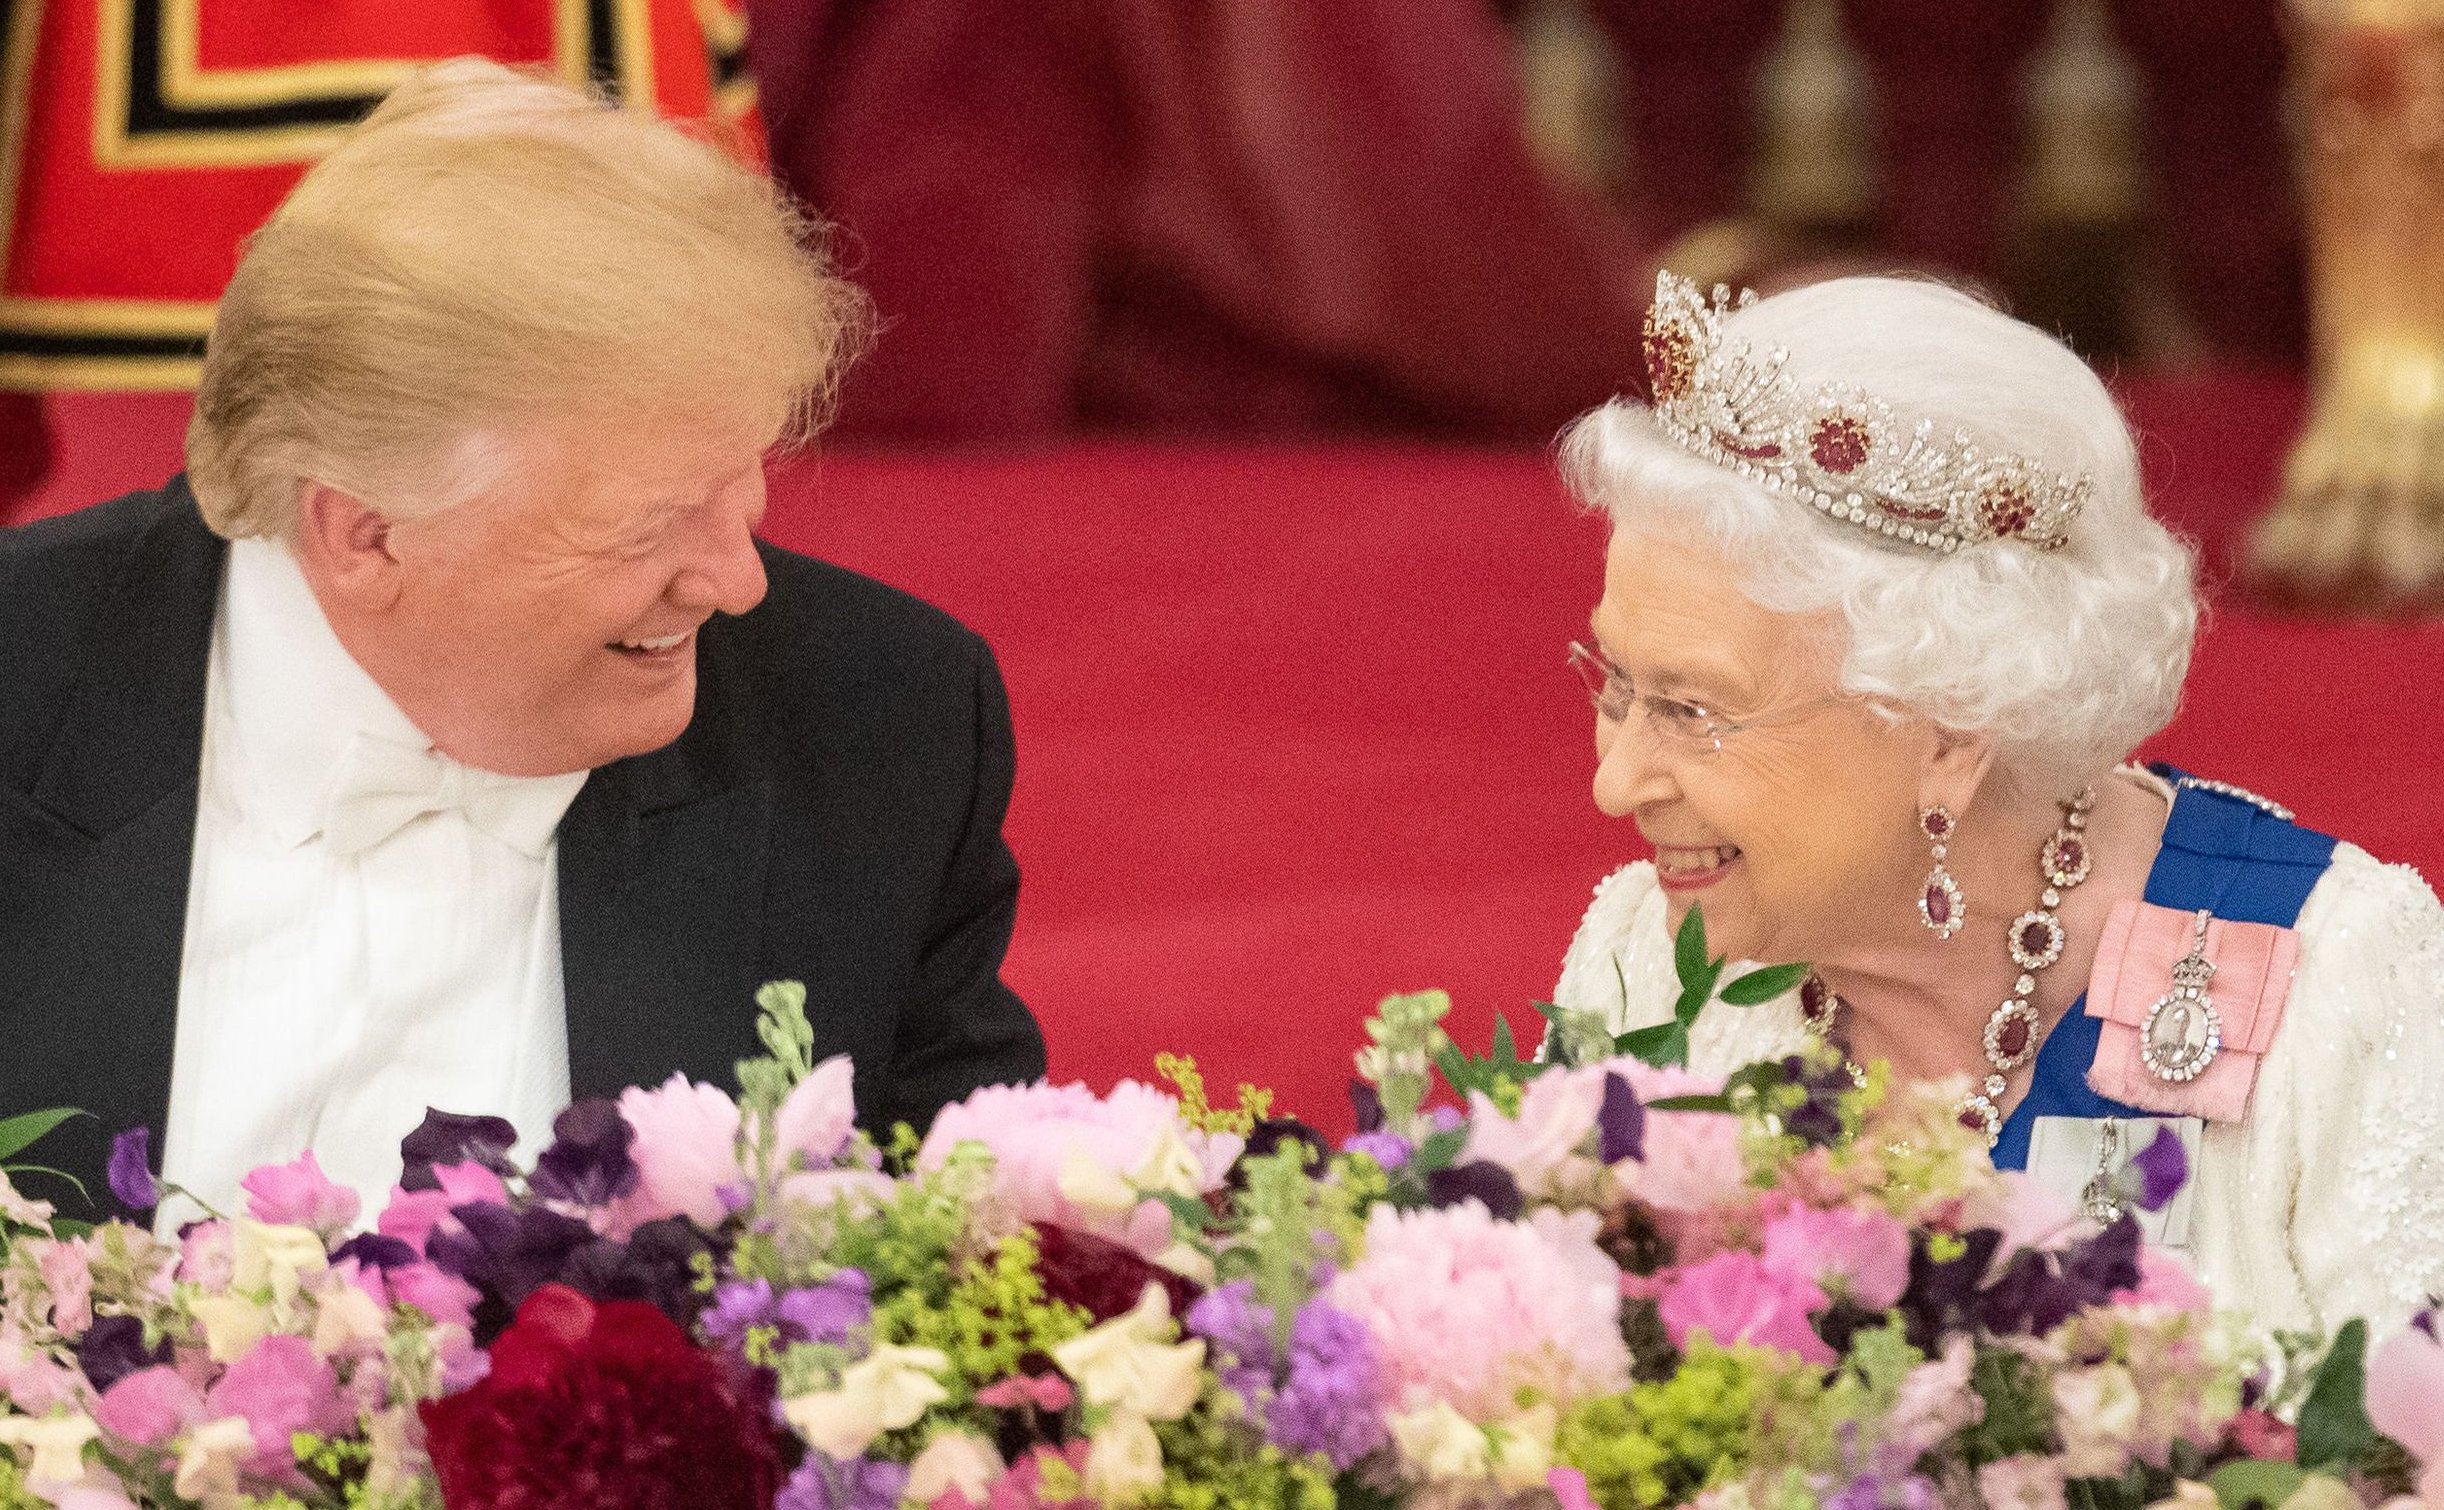 El mensaje oculto en la tiara de rubíes de la reina Isabel II 